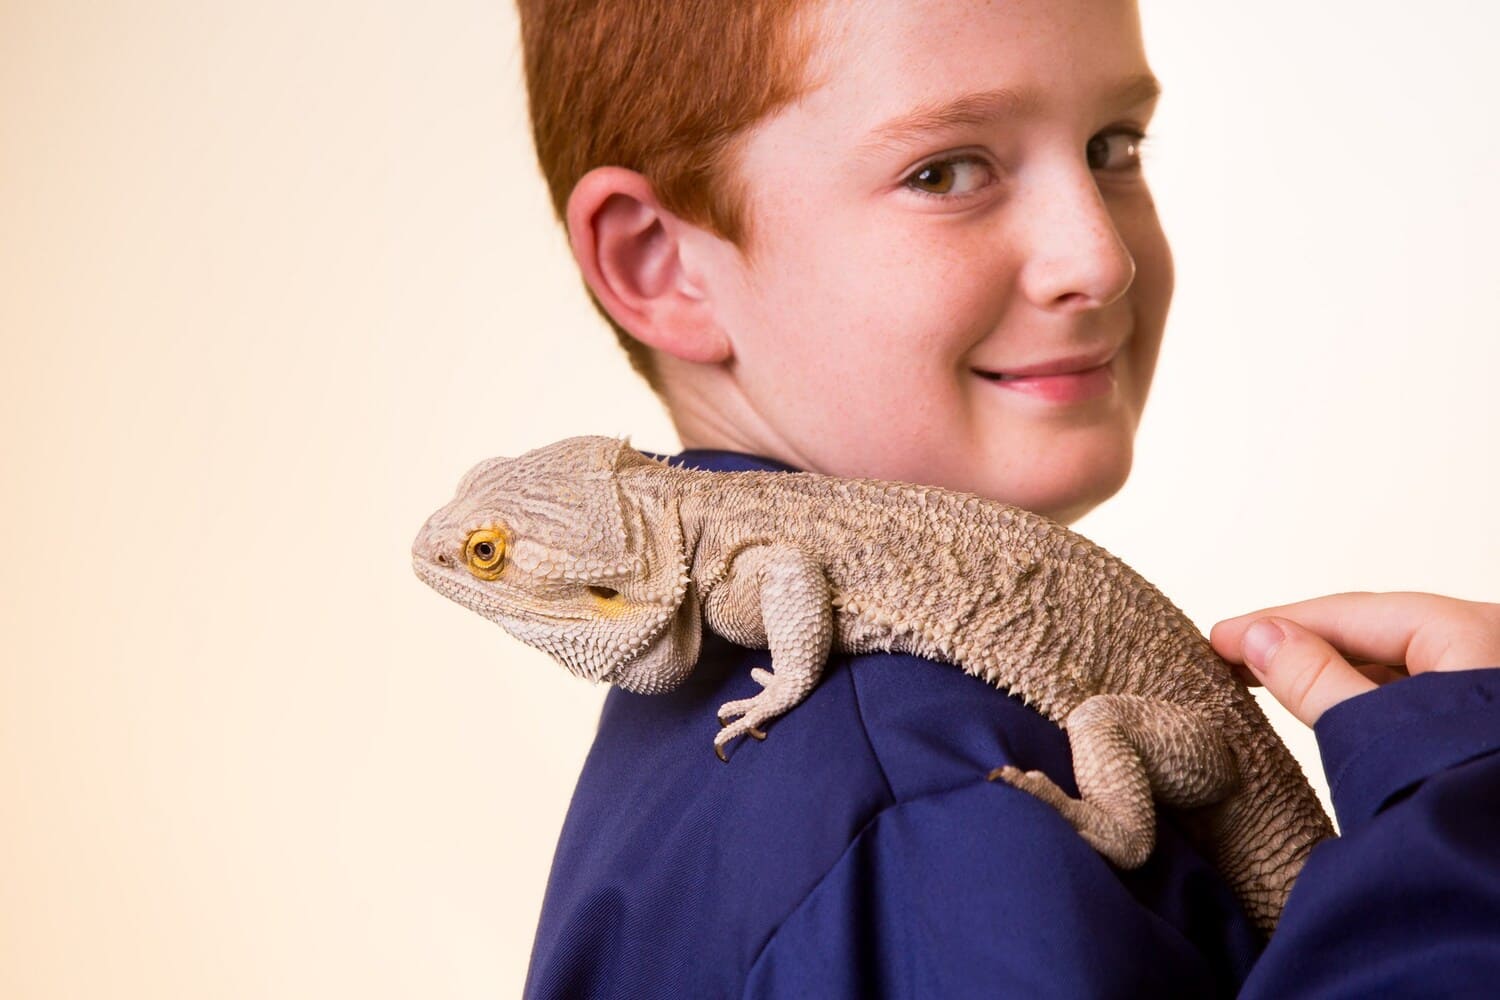 Boy Carrying a Chameleon on the Shoulder